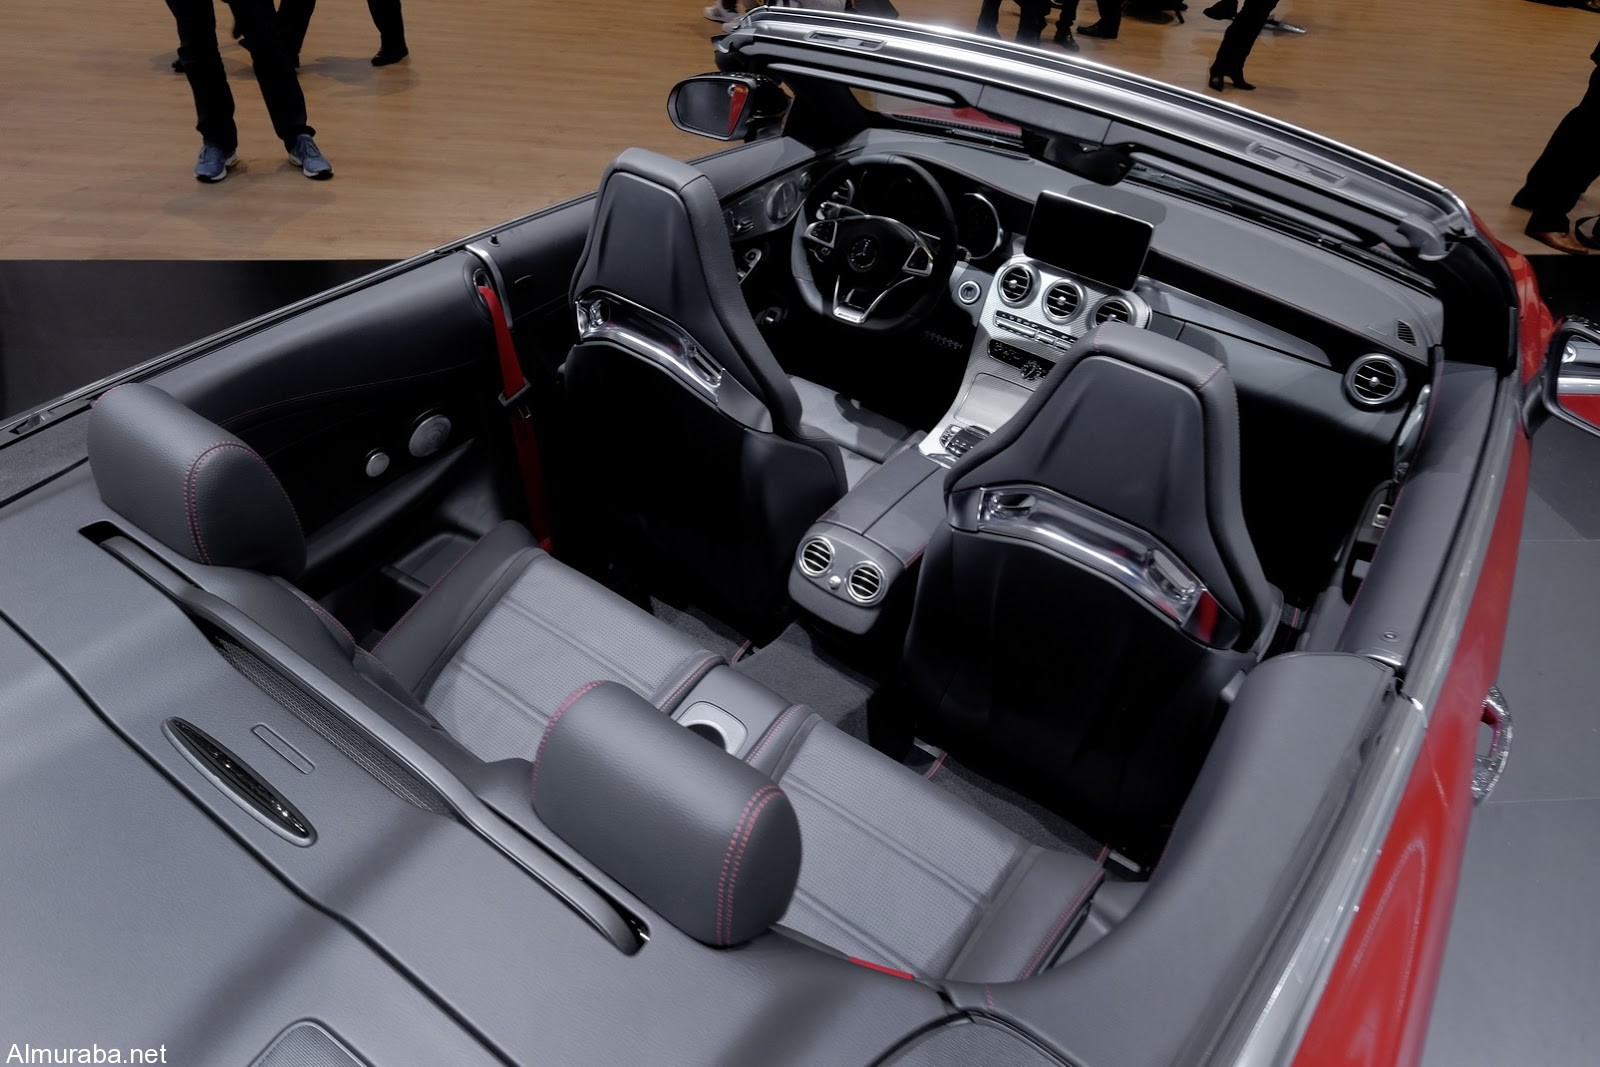 "مرسيدس بنز" تضيف سيارة جديدة لعائلة C-Class وتطلقها بمعرض سيارات جنيف Mercedes 2017 40